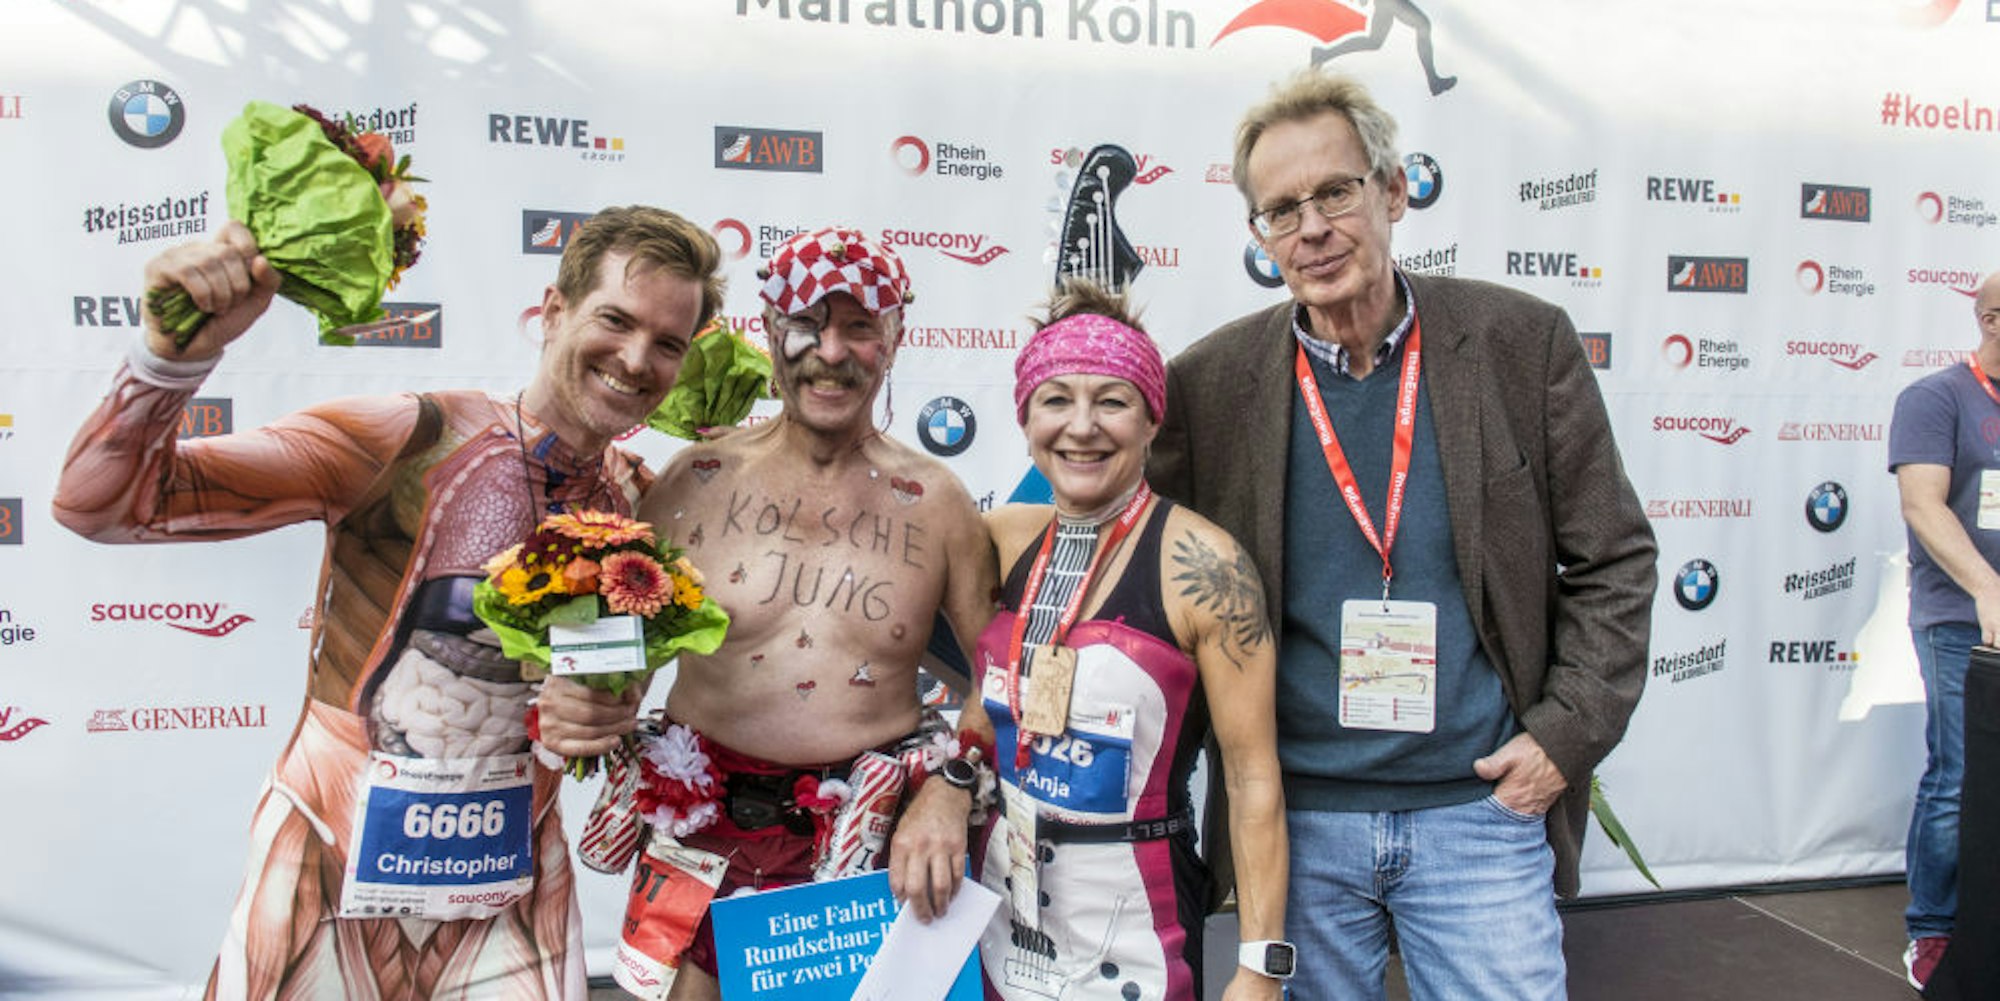 Nicht nur ganz schön flott unterwegs, sonder auch fantasievoll kostümiert: Christoph Ledwig, Gerd Mausbach und Anja Rückmann freuten sich über die Rundschau-Preise, die Redaktionsleiter Stefan Sommer ihnen nach dem Marathon übergab.